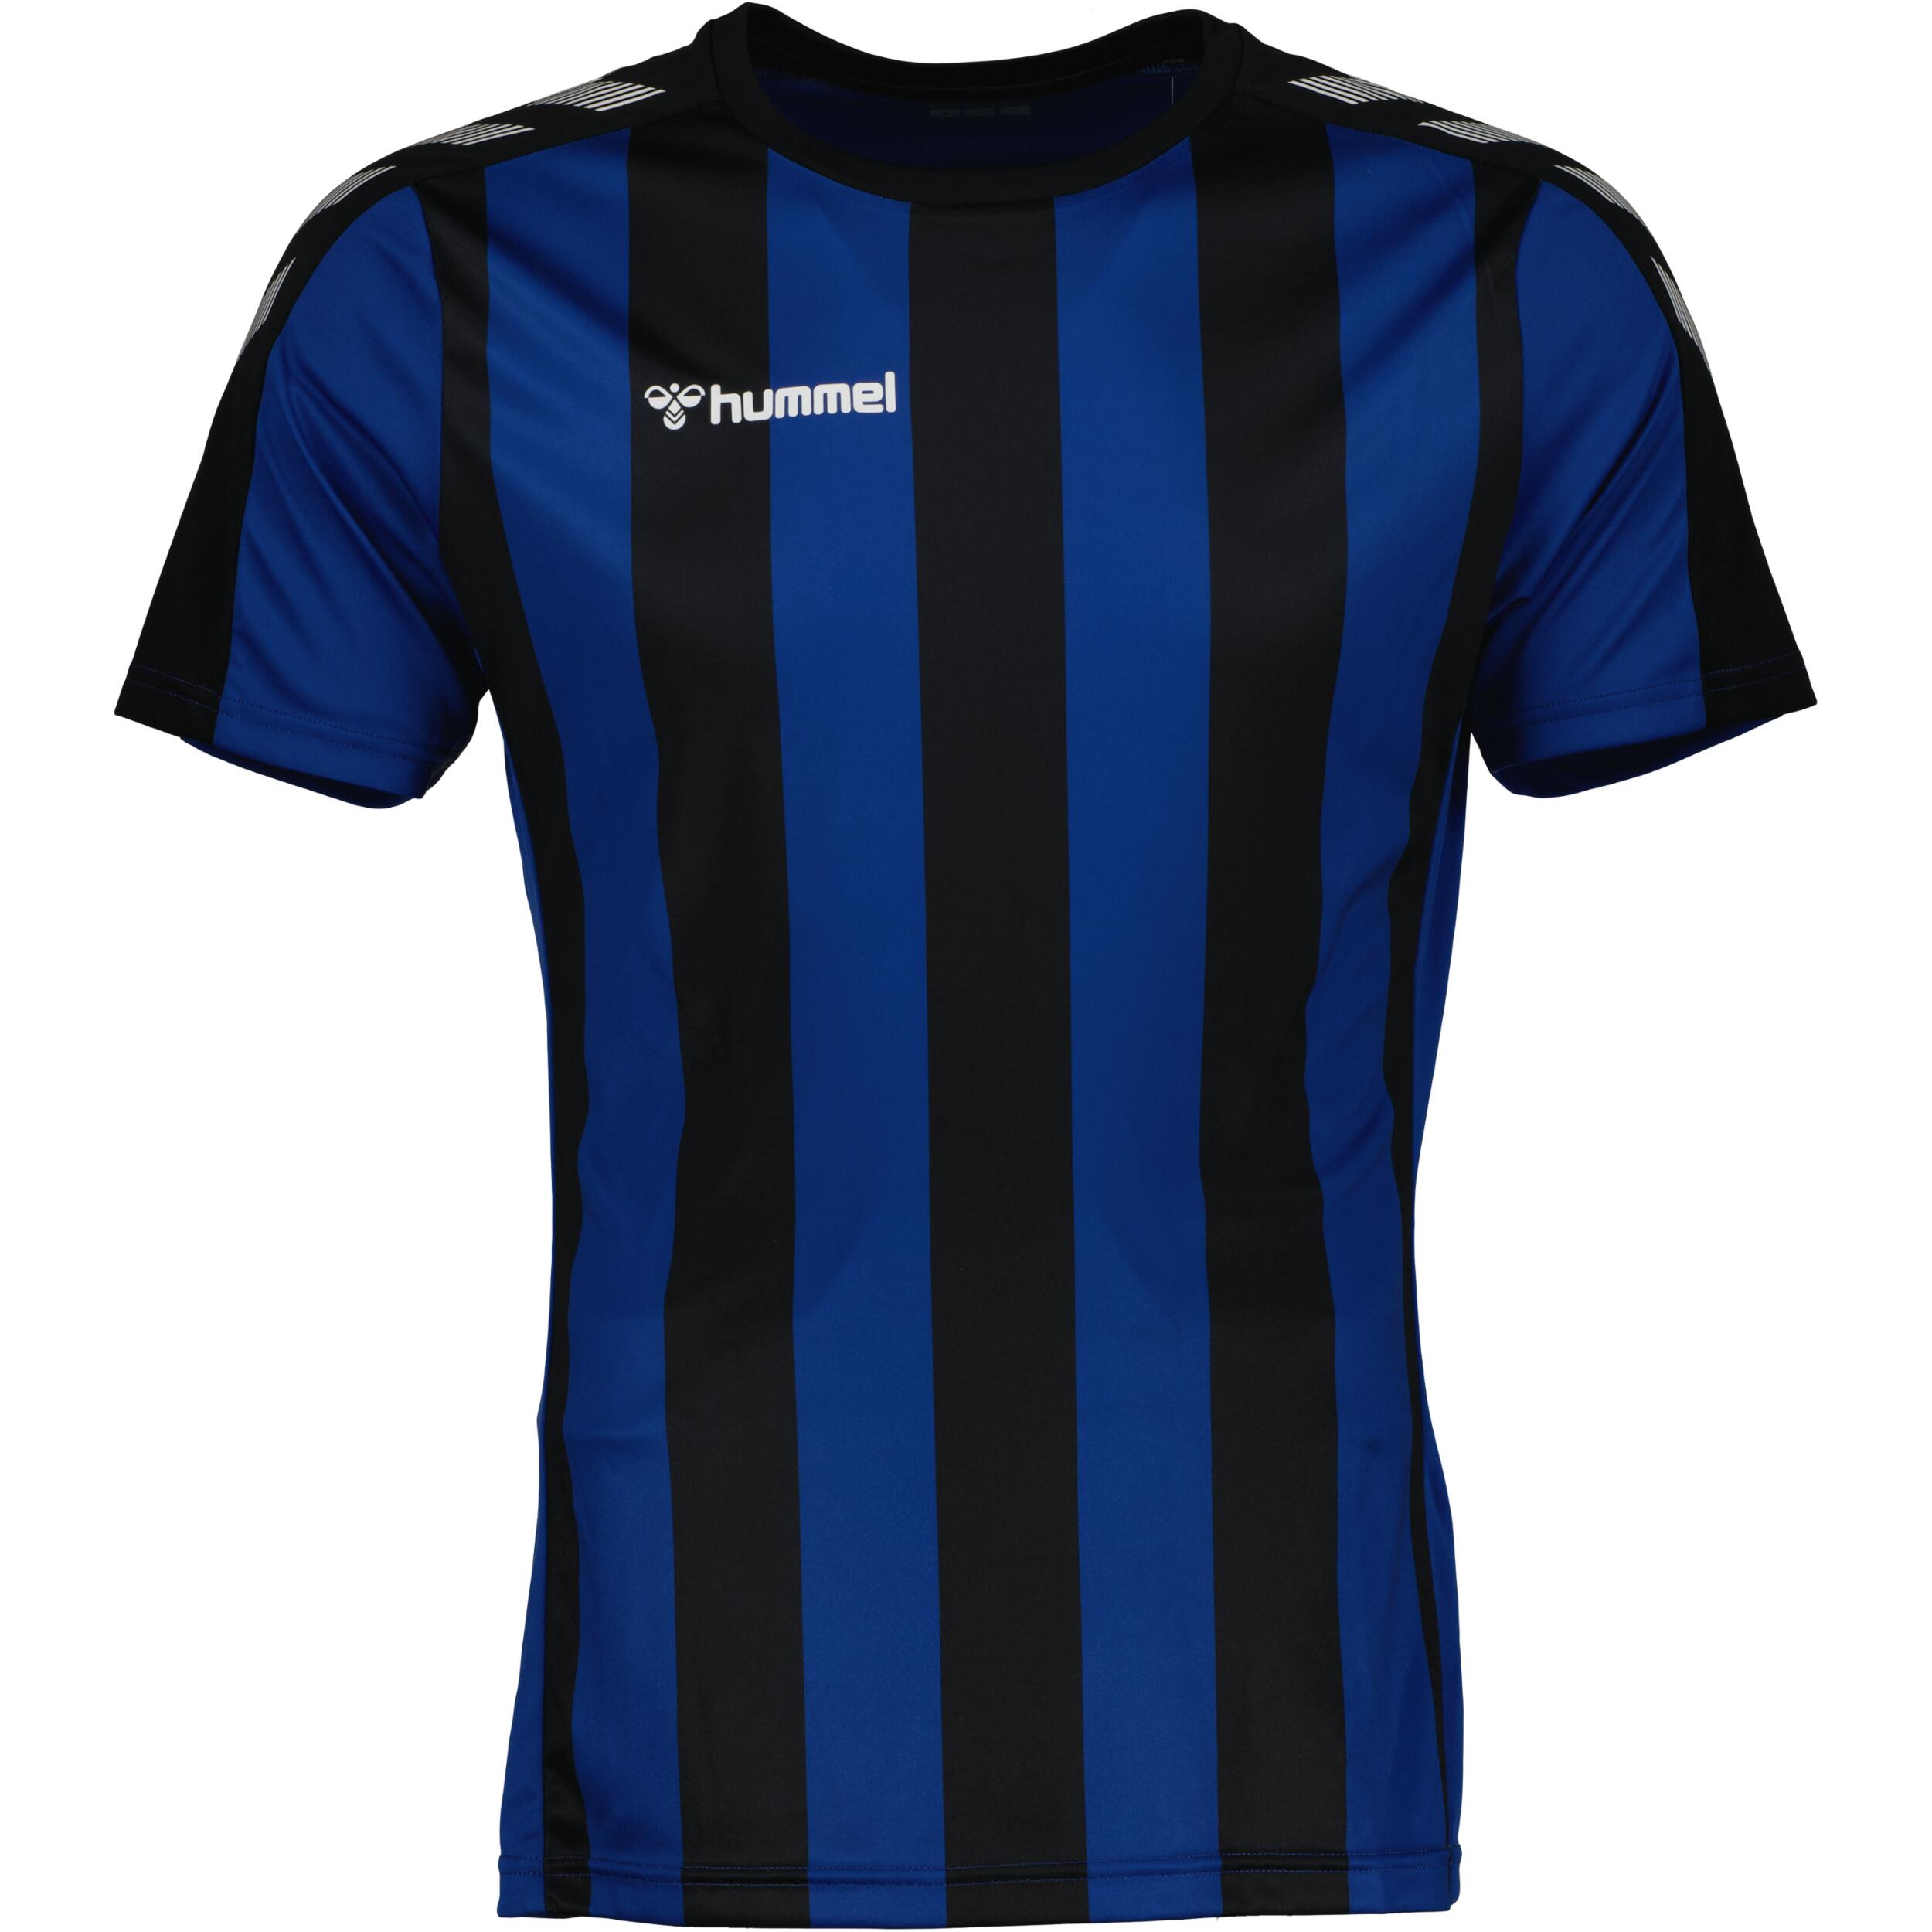 HUMMEL Stripe jersey for kids, great for football, in black/true blue